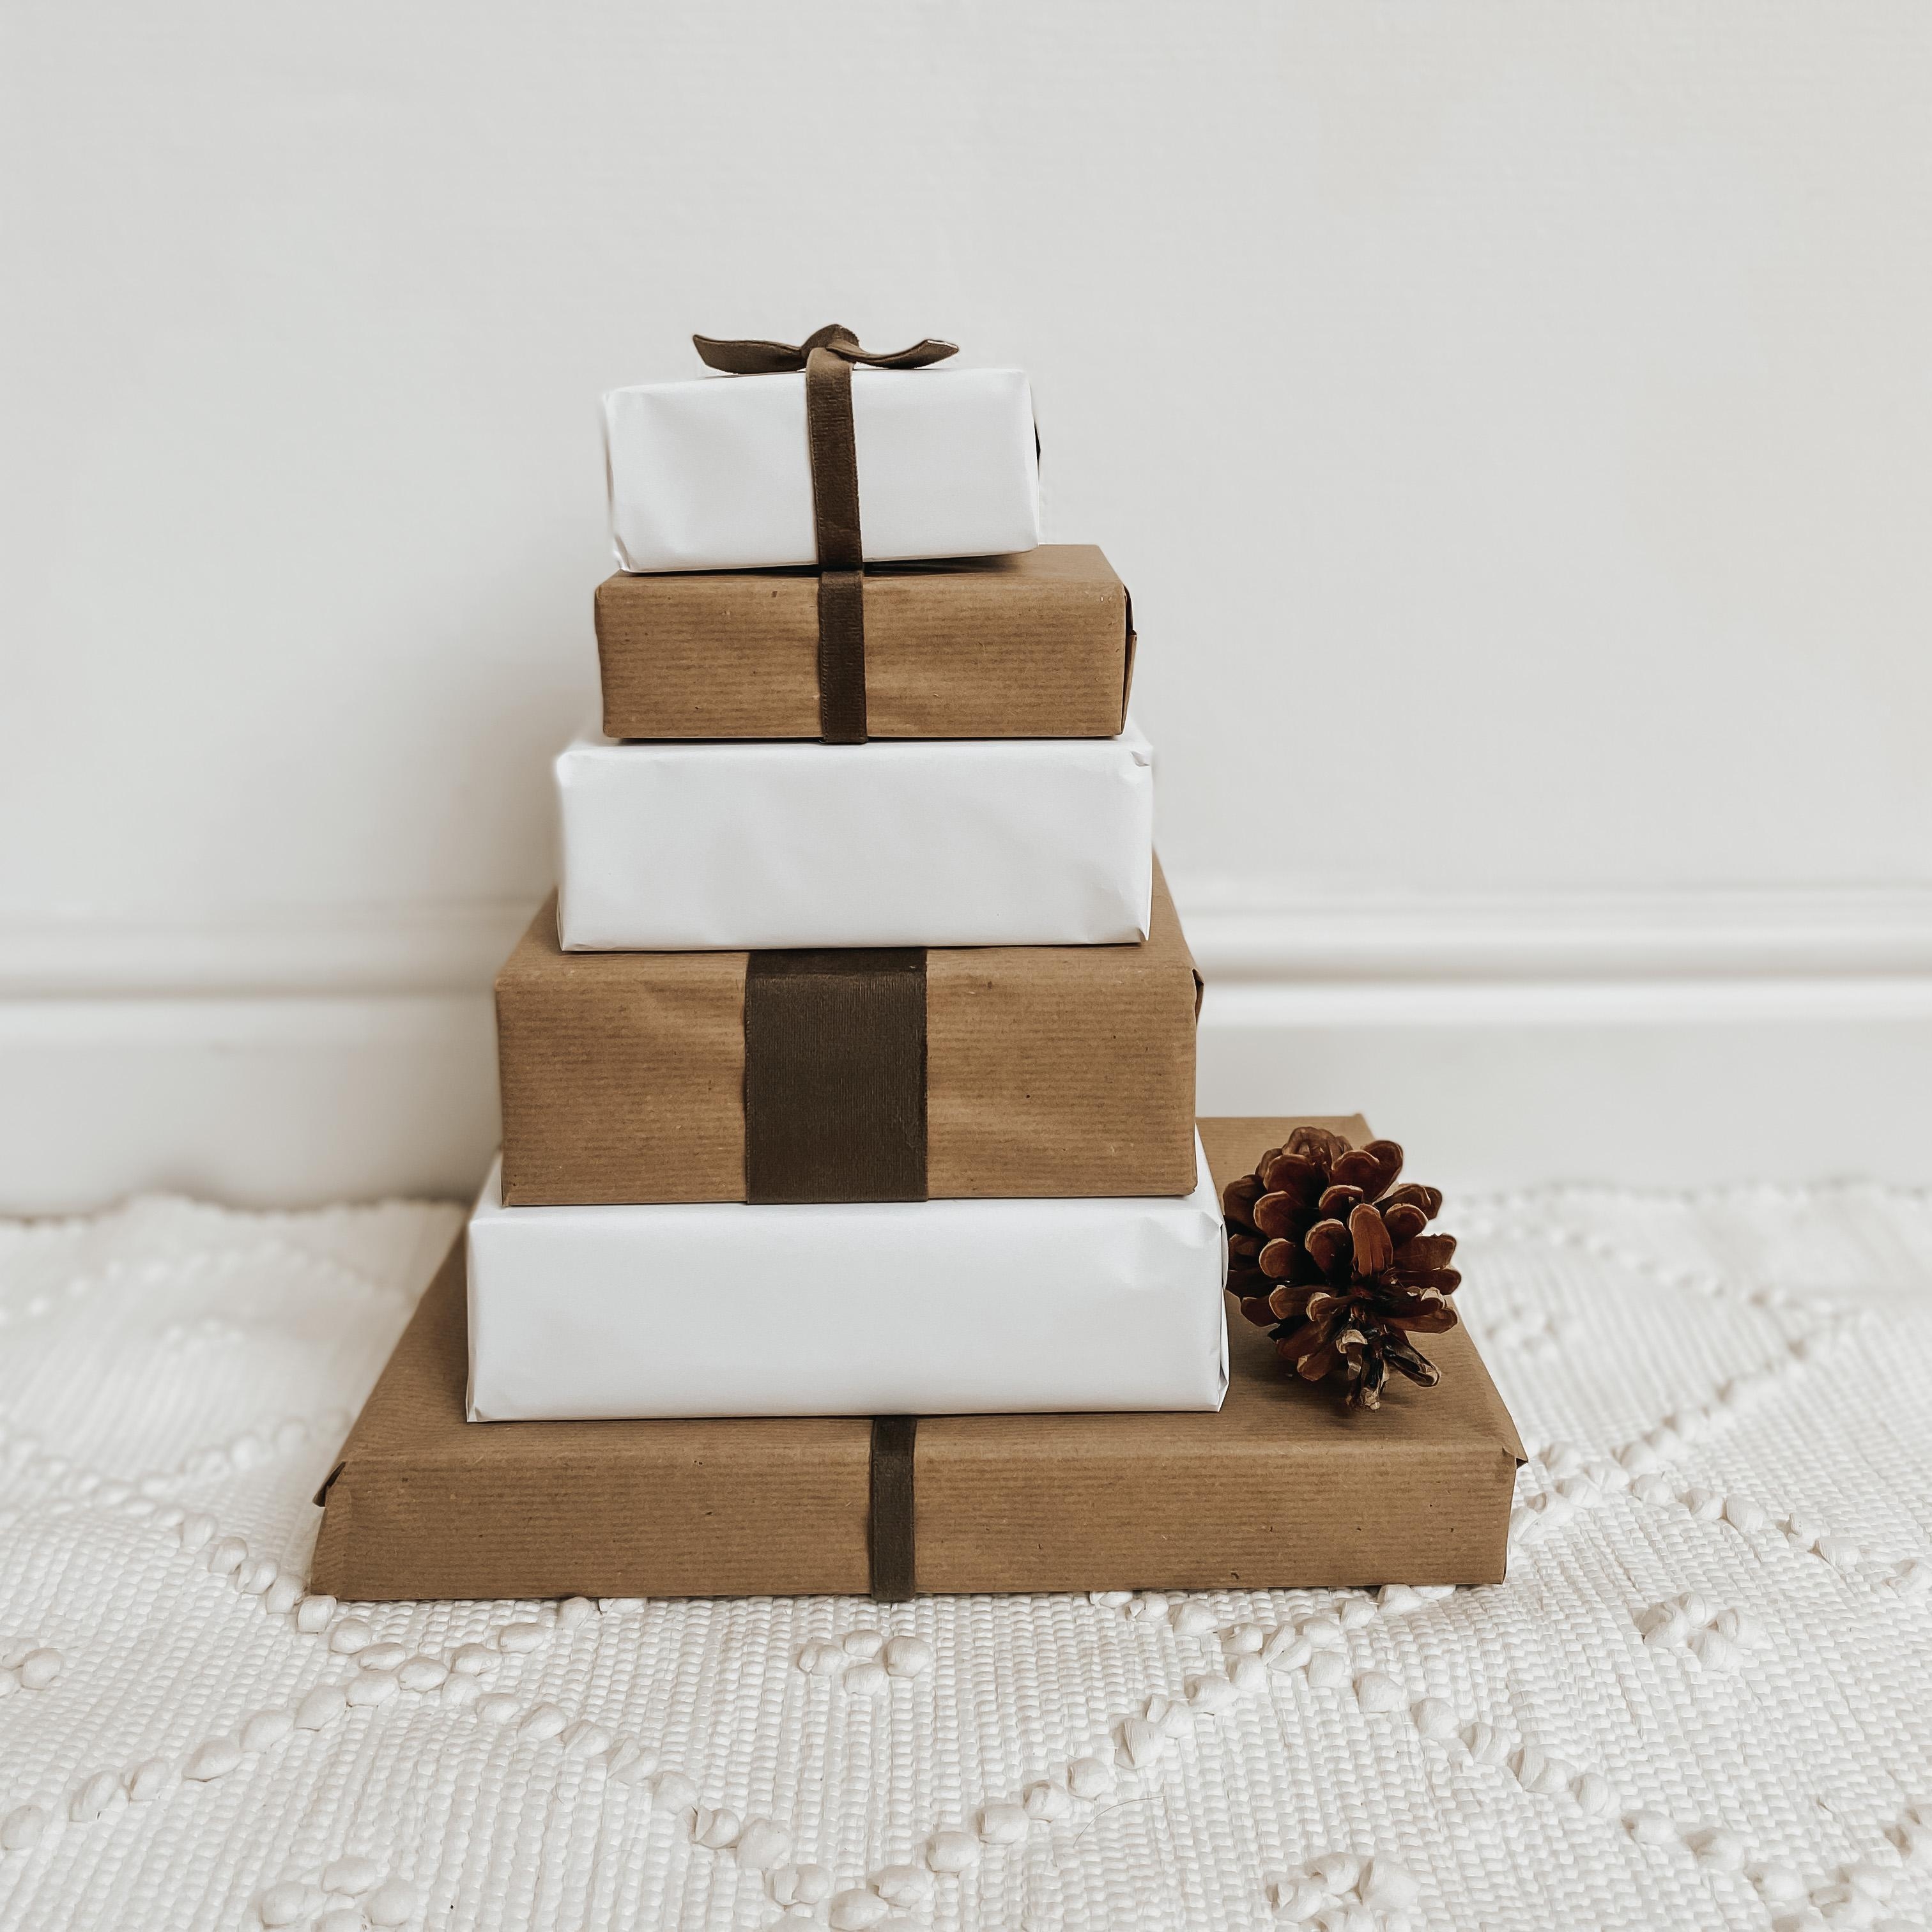 Die ersten Geschenke sind verpackt
#presents #present #geschenke #weihnachtszeit #christmasiscoming